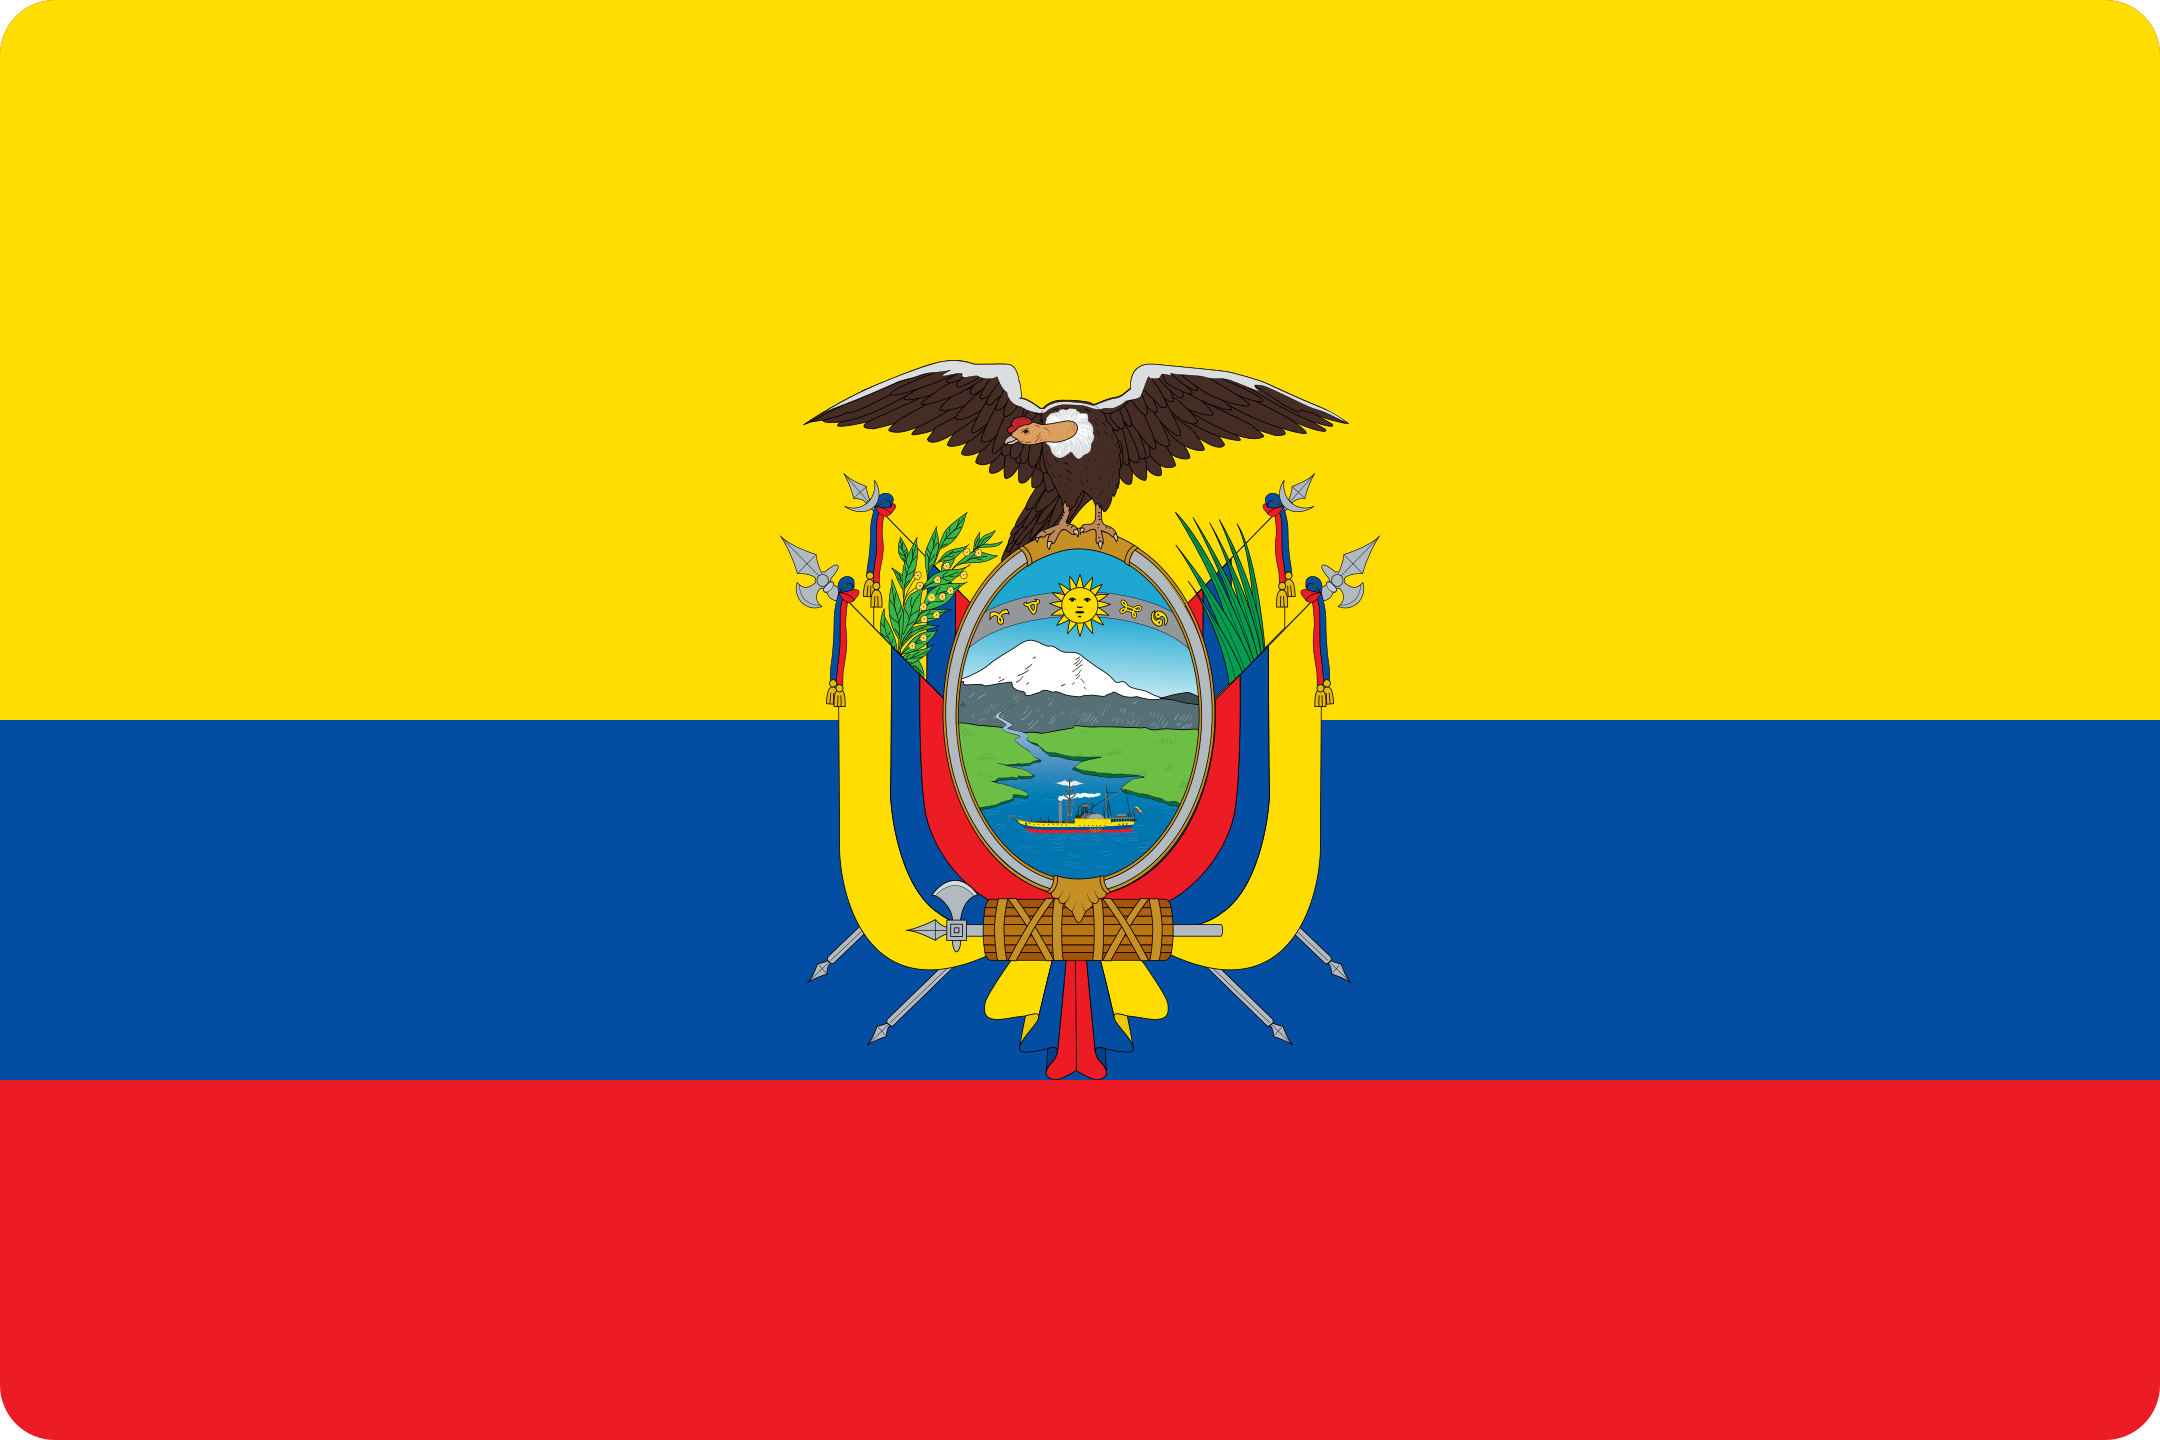 bandeira ecuador flag logo 3 - Flag of Ecuador